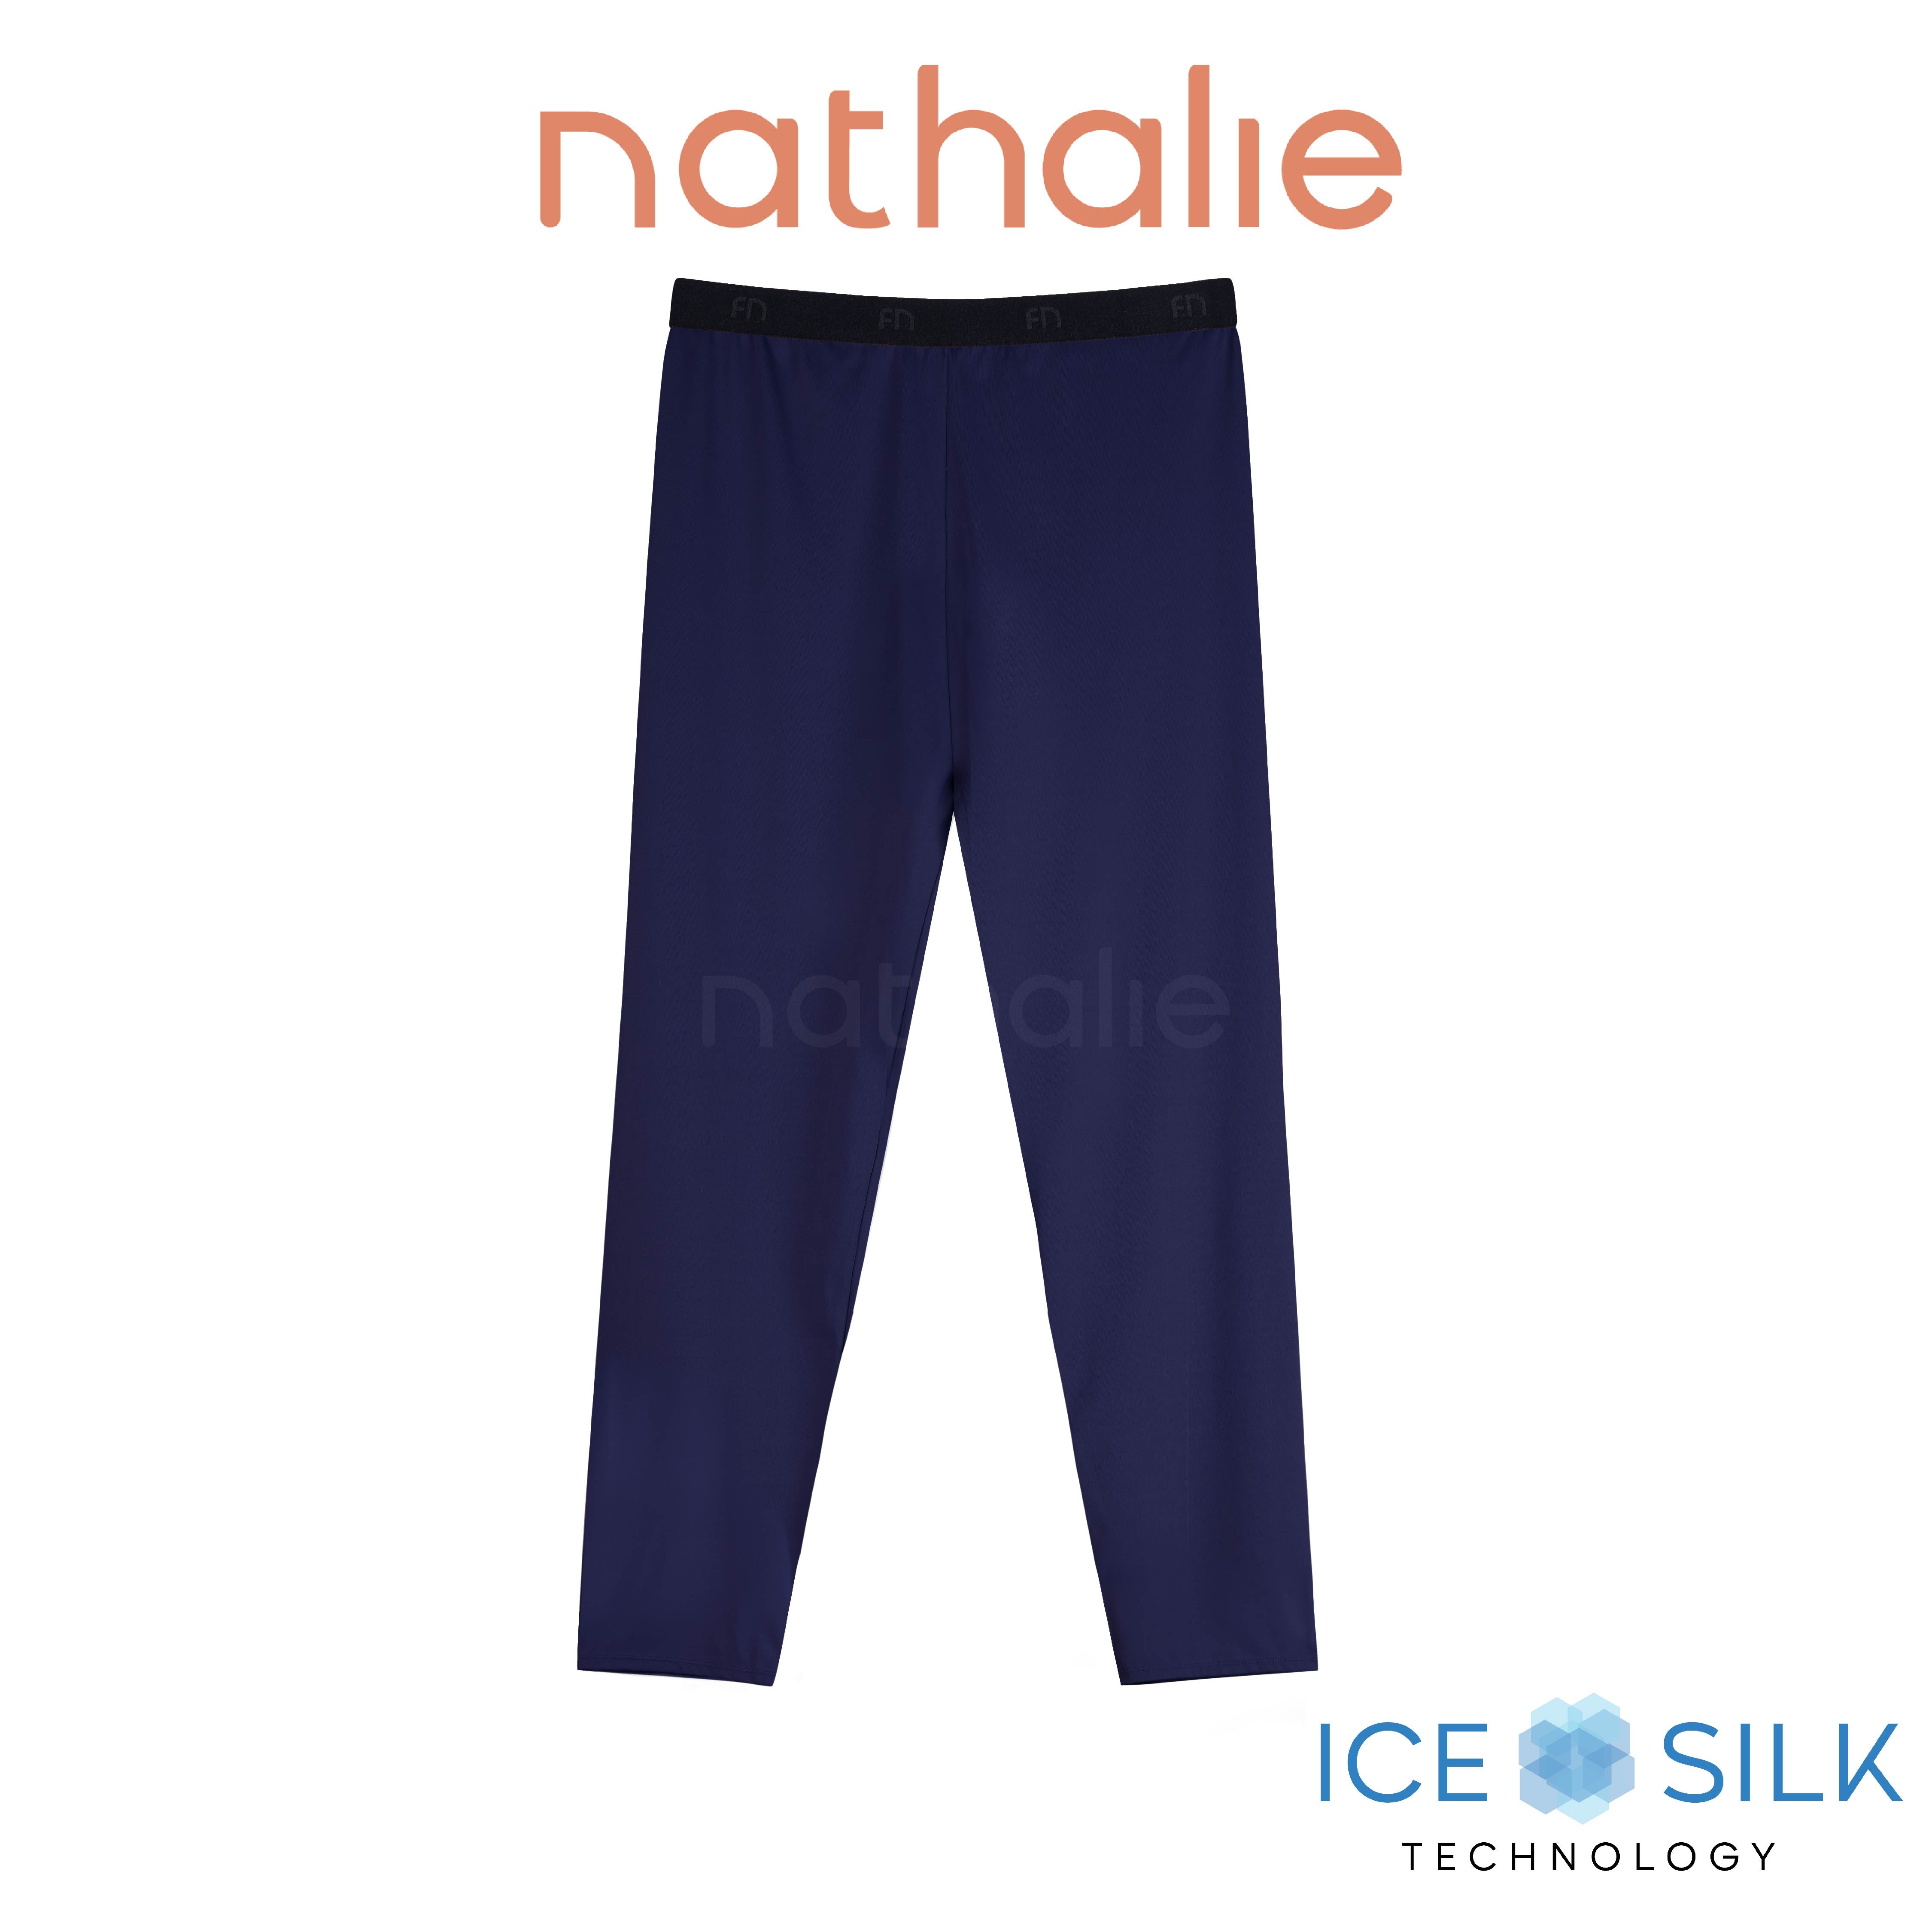 Nathalie Celana Panjang Olahraga Wanita Yoga Ice Silk Pants 1 Pcs NTC 3442